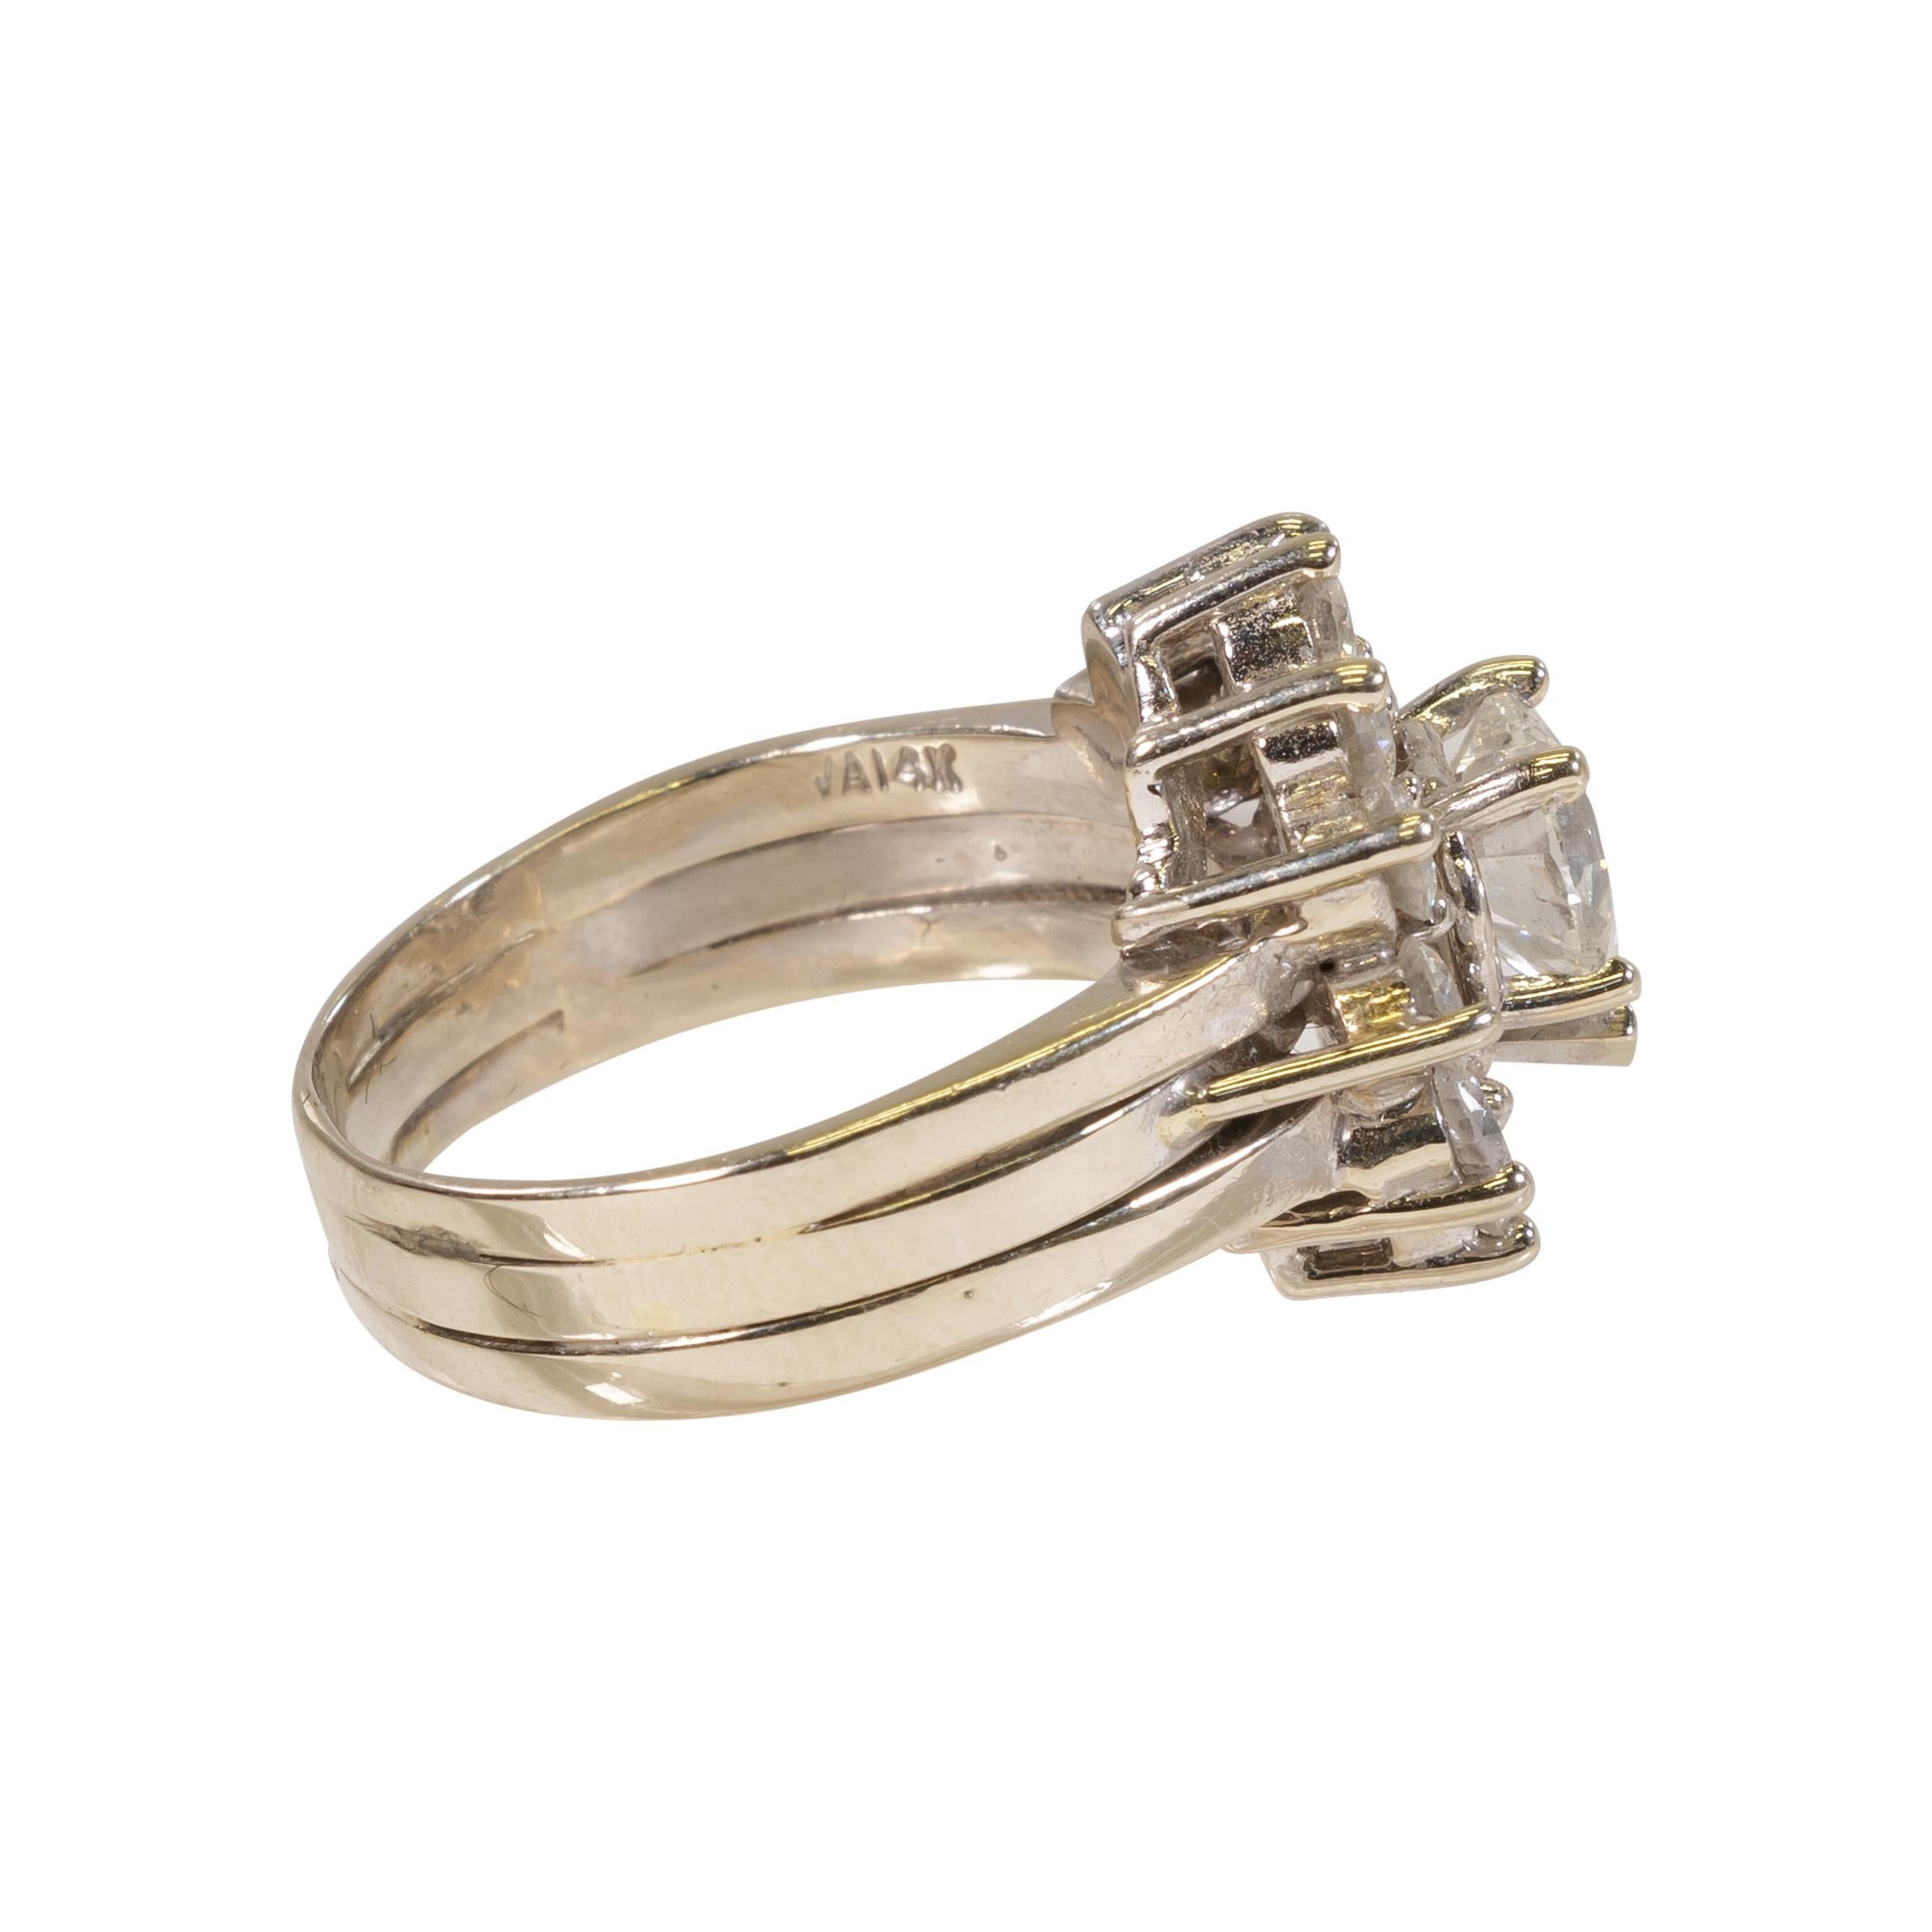 Herzförmiger Diamantring. 14kt Weißgold Damen Ehering, mit einem 1,50 ct herzförmigen Diamanten Zentrum. SI1, I5, und 1,68 ct tw Diamant Nahkampf.

PERIODE: Gegründet 1940-50er Jahre

URSPRUNG: U.S.A.

GRÖSSE: Ring Sz: 5.5 Fläche: H5/8